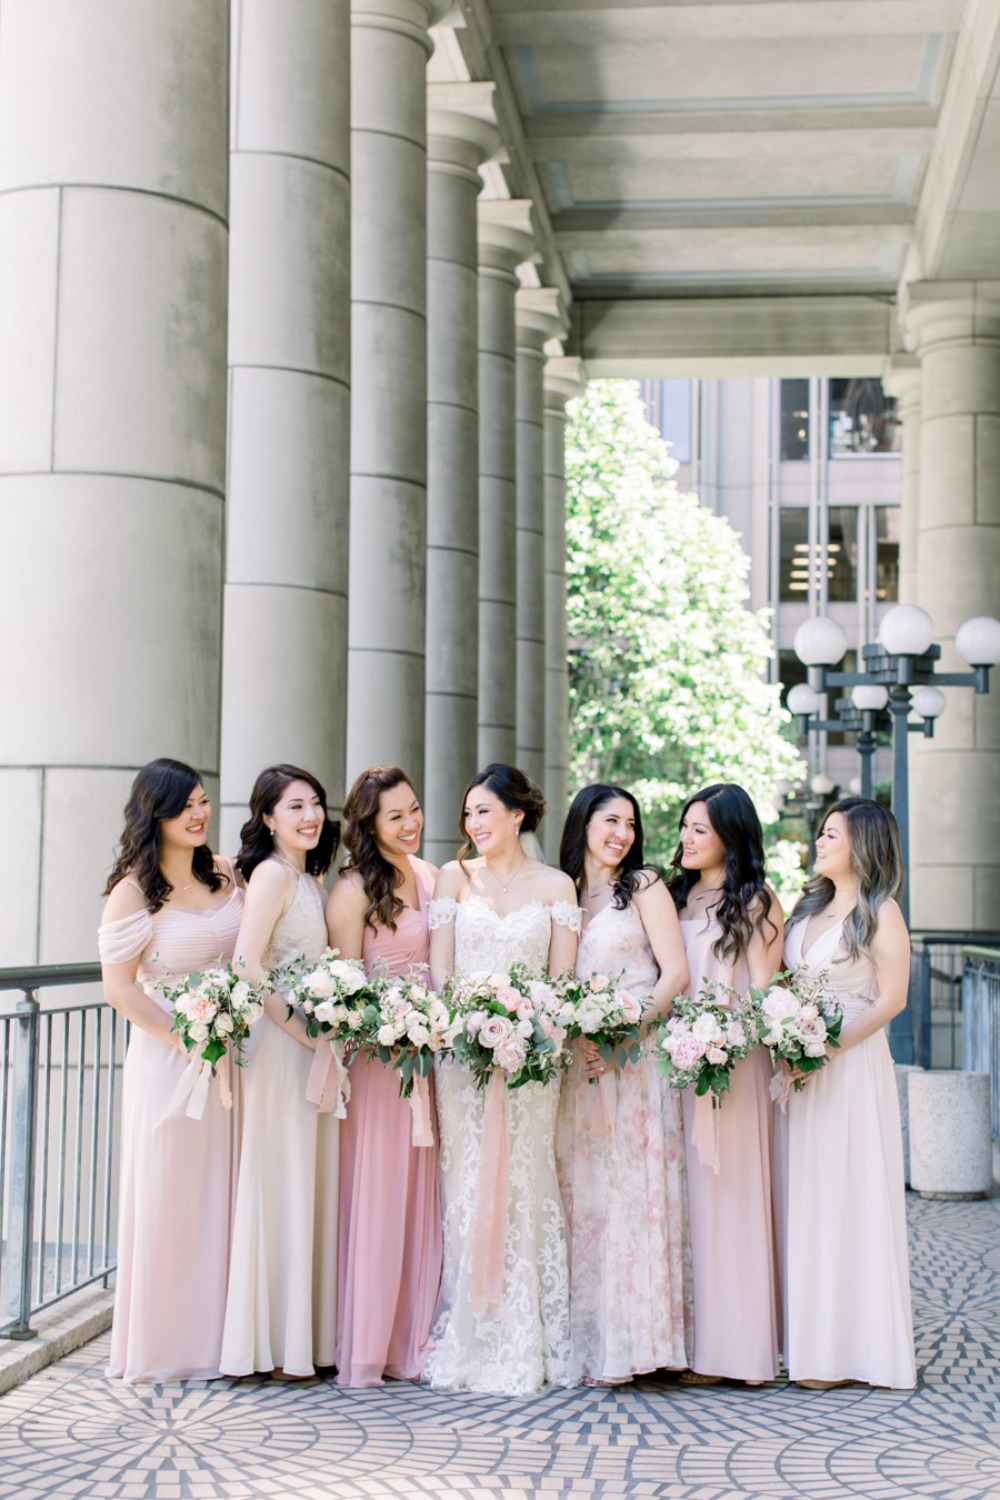 Bridesmaids in hues of blush